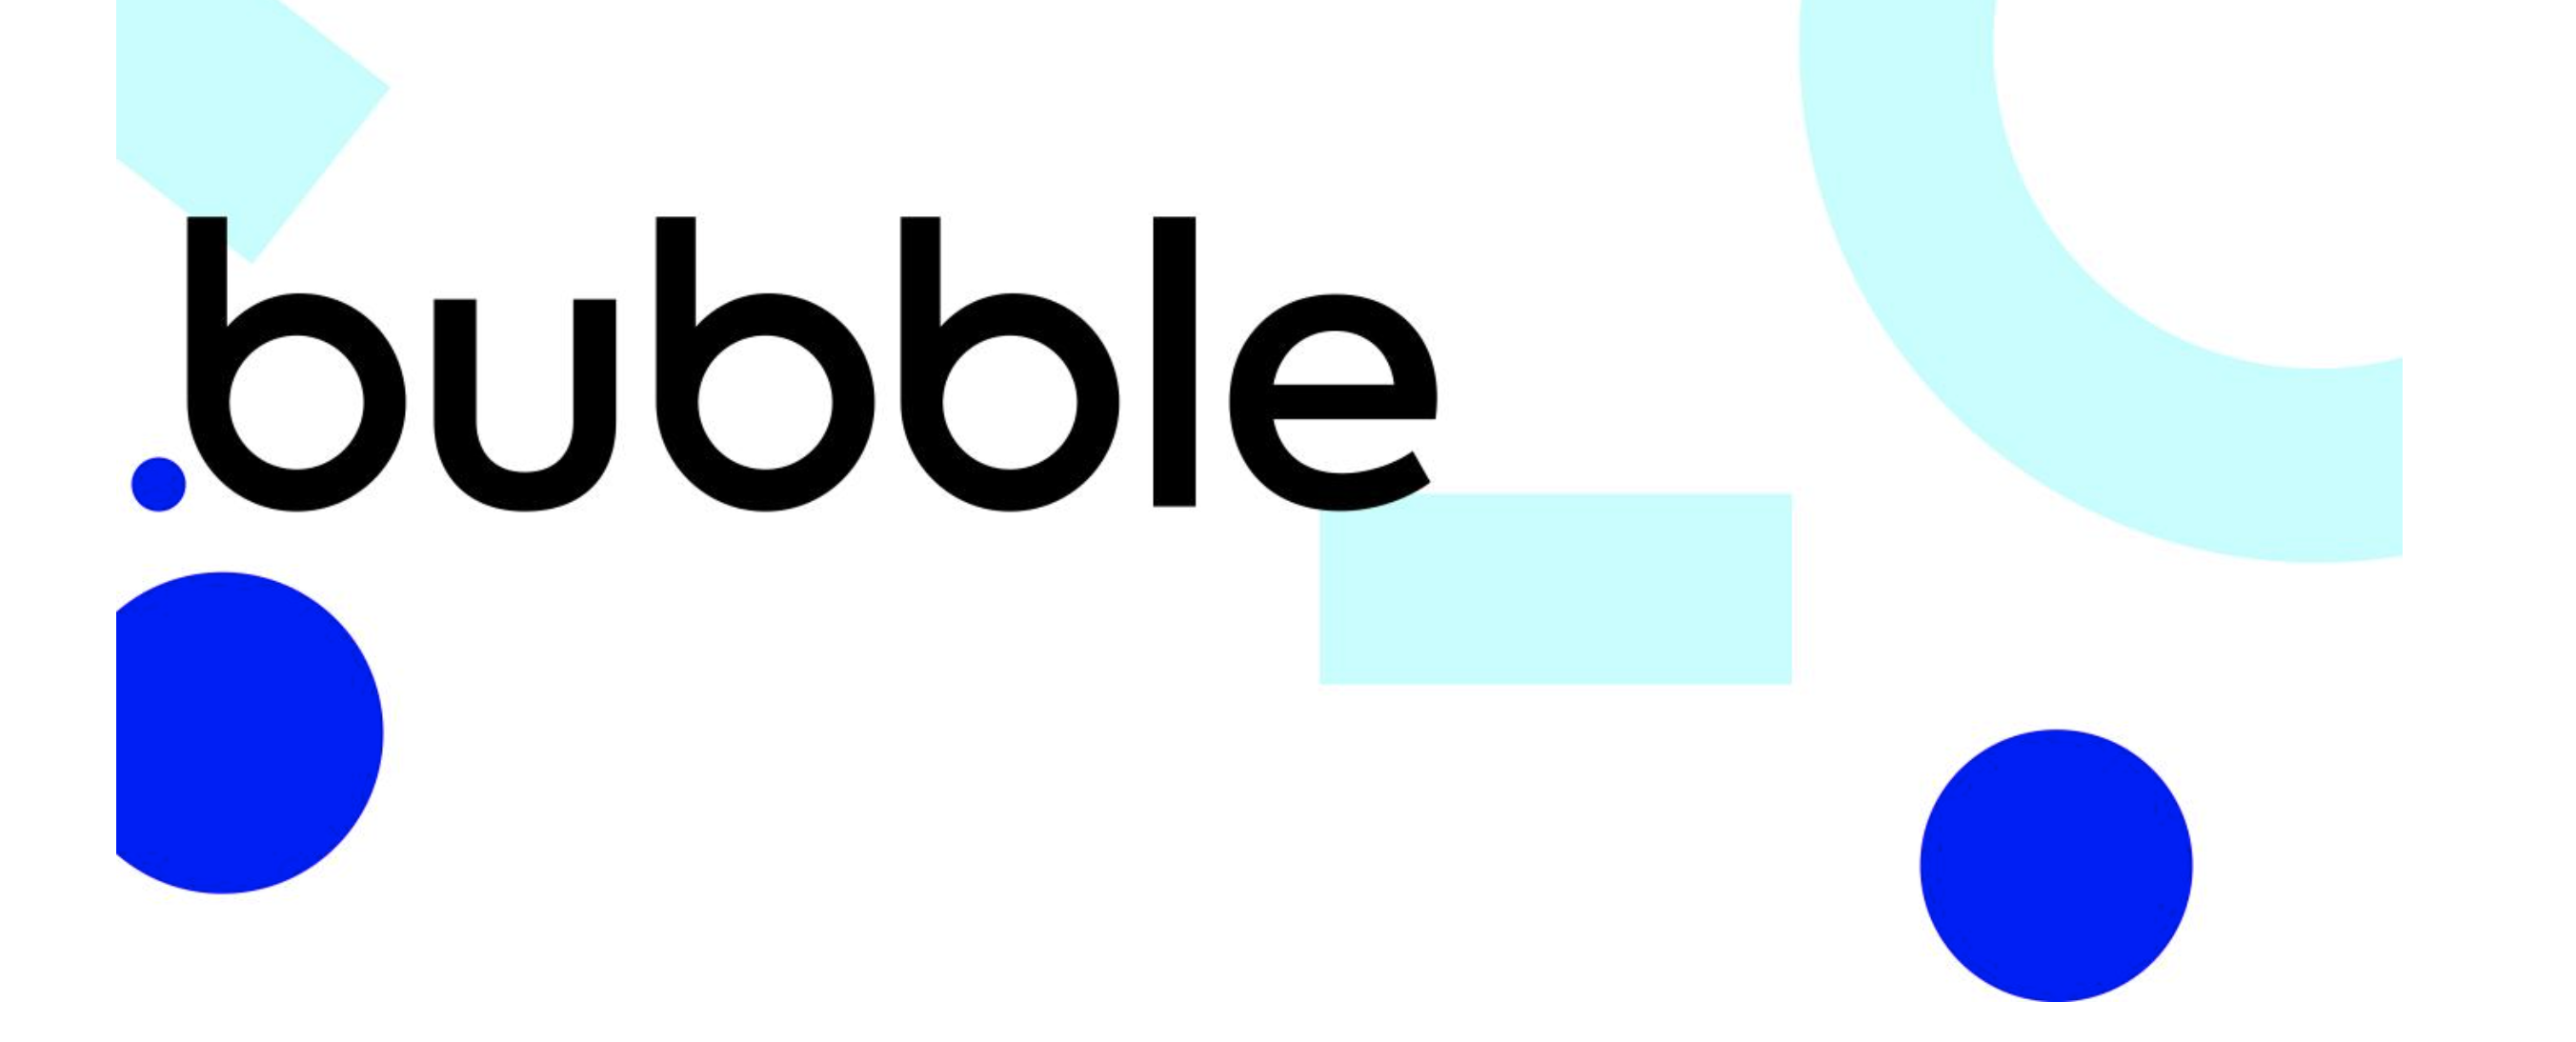 Comment bien gérer le responsive avec la solution nocode bubble ?